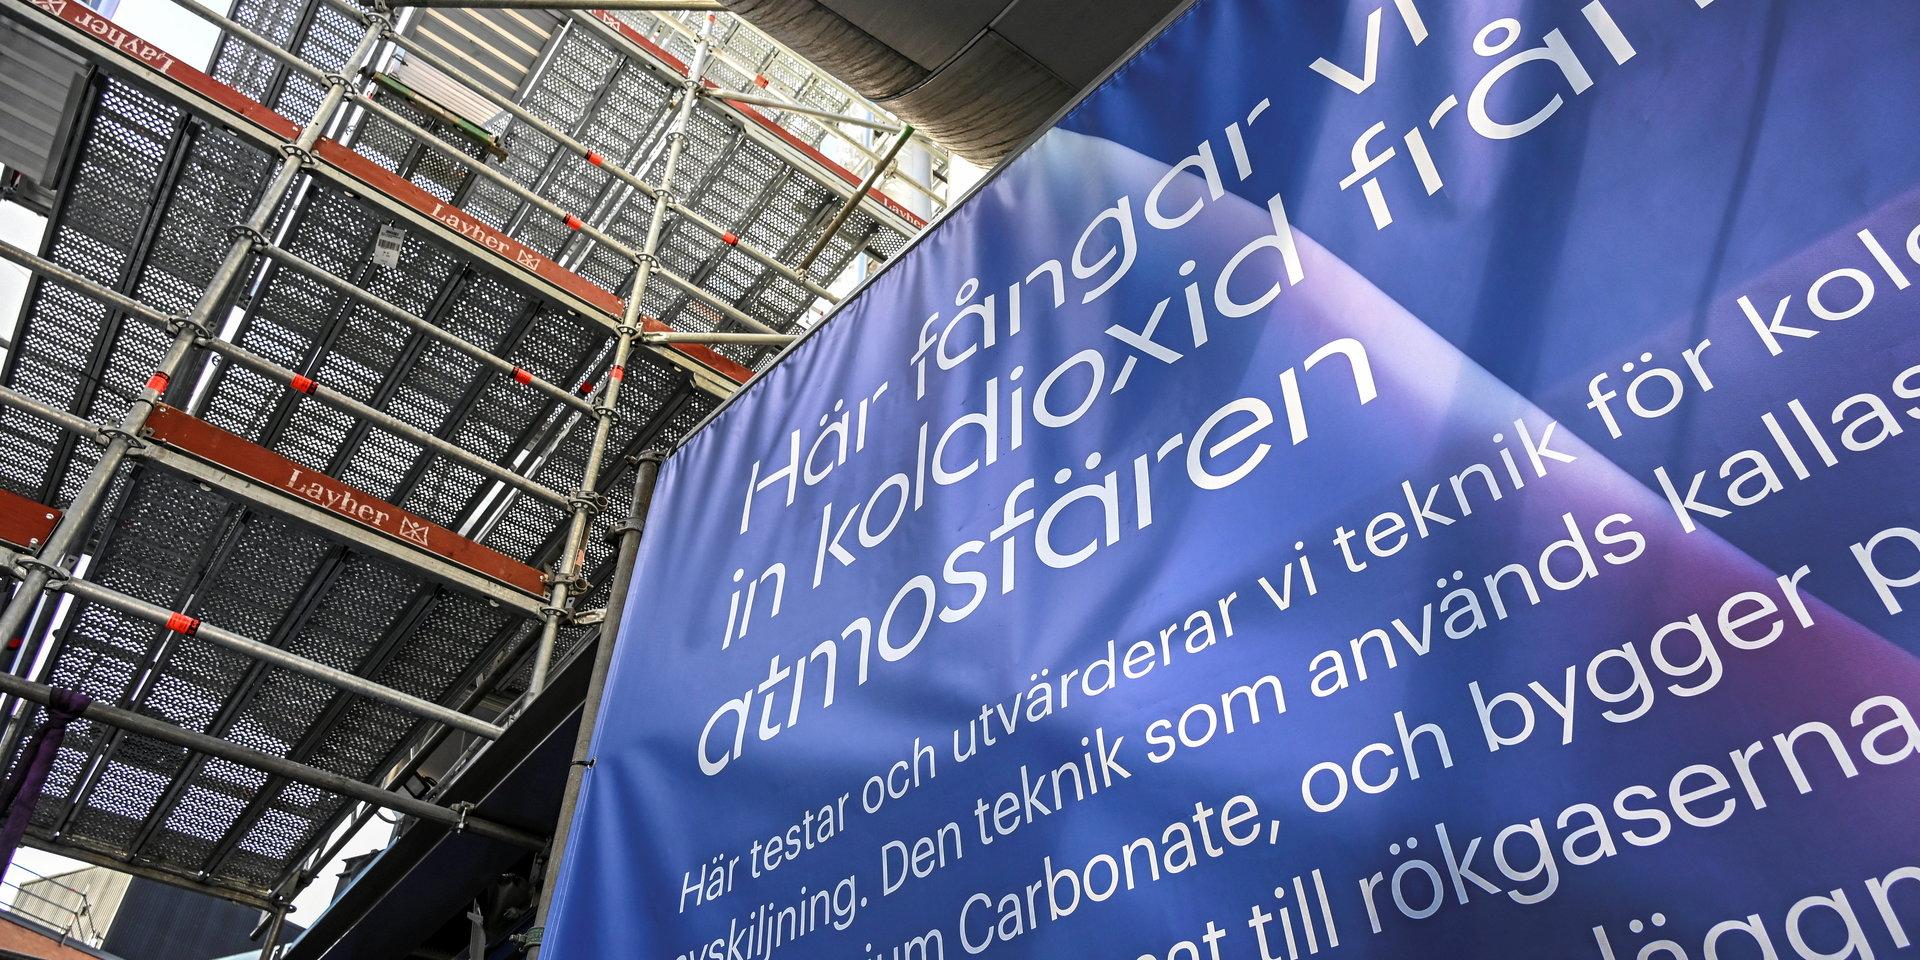 Koldioxid. För att nå klimatmålen måste Sverige satsa på storskalig koldioxidinfångning.